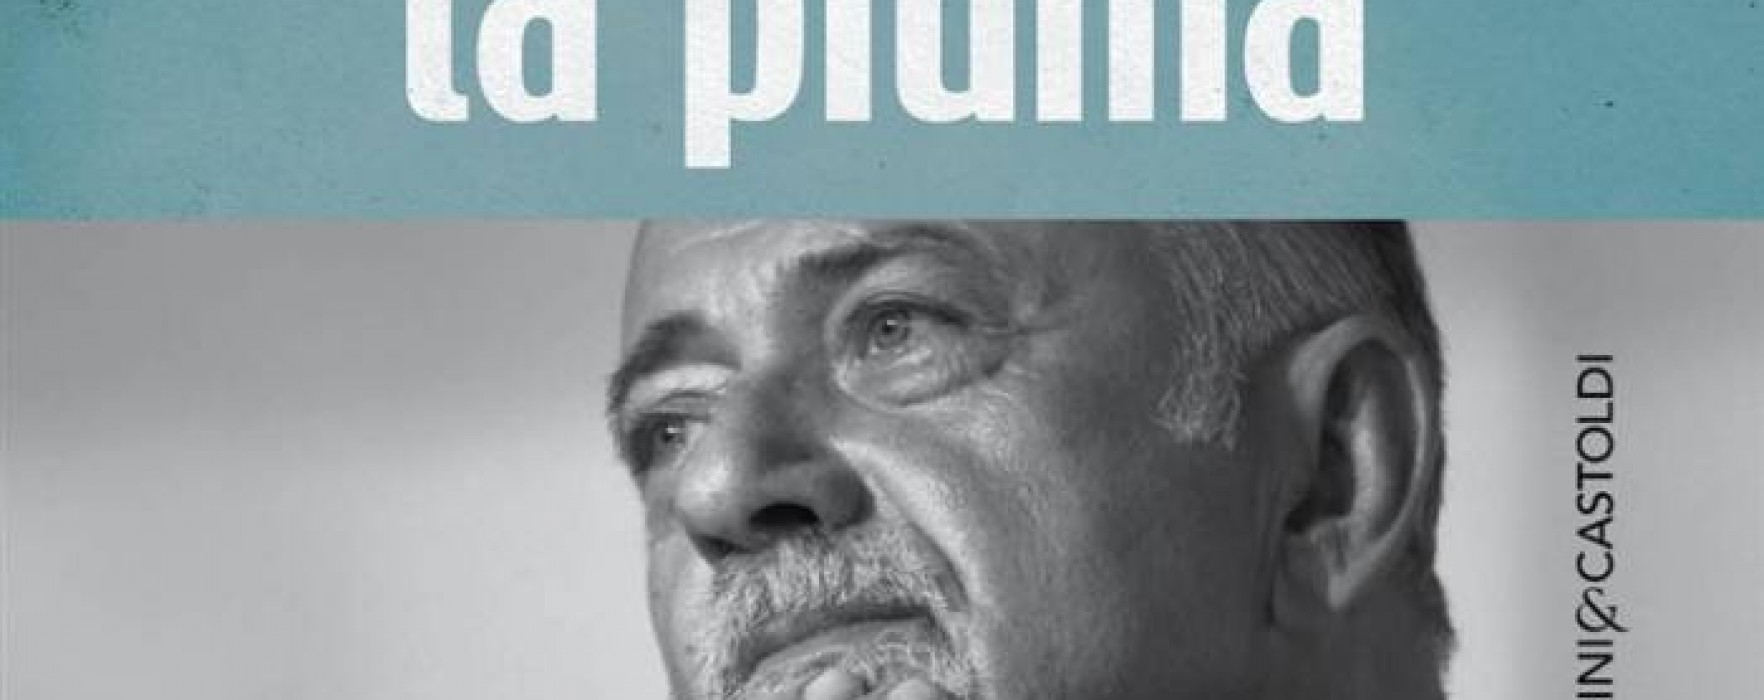 Un anno senza Giorgio Faletti. Il libro postumo: “La piuma”